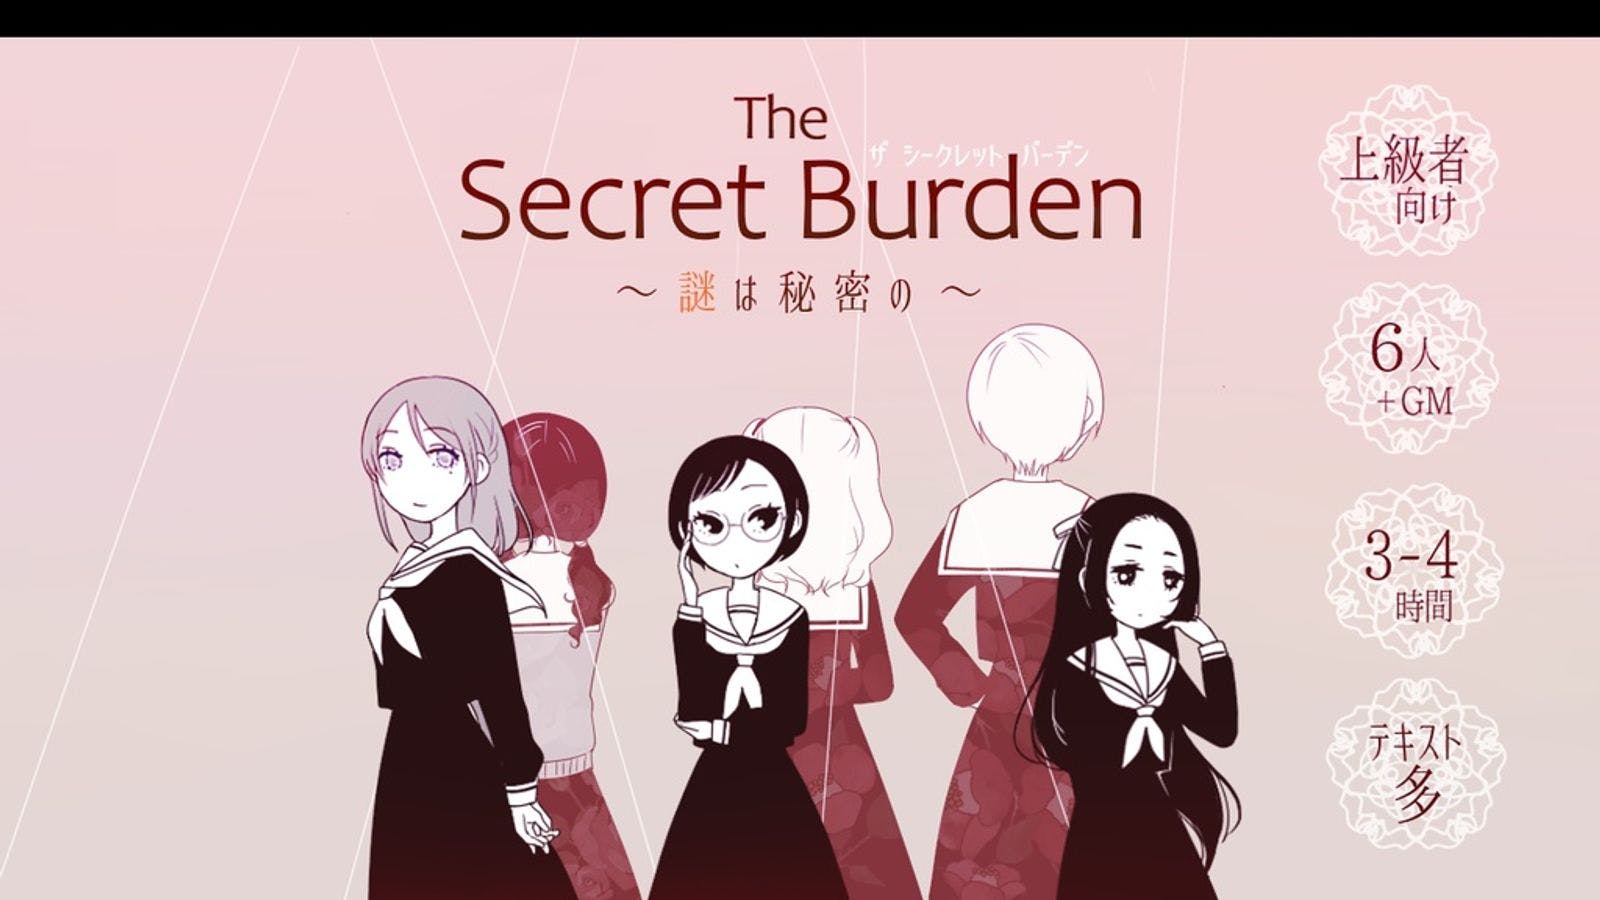 The Secret Burden〜謎は秘密の〜